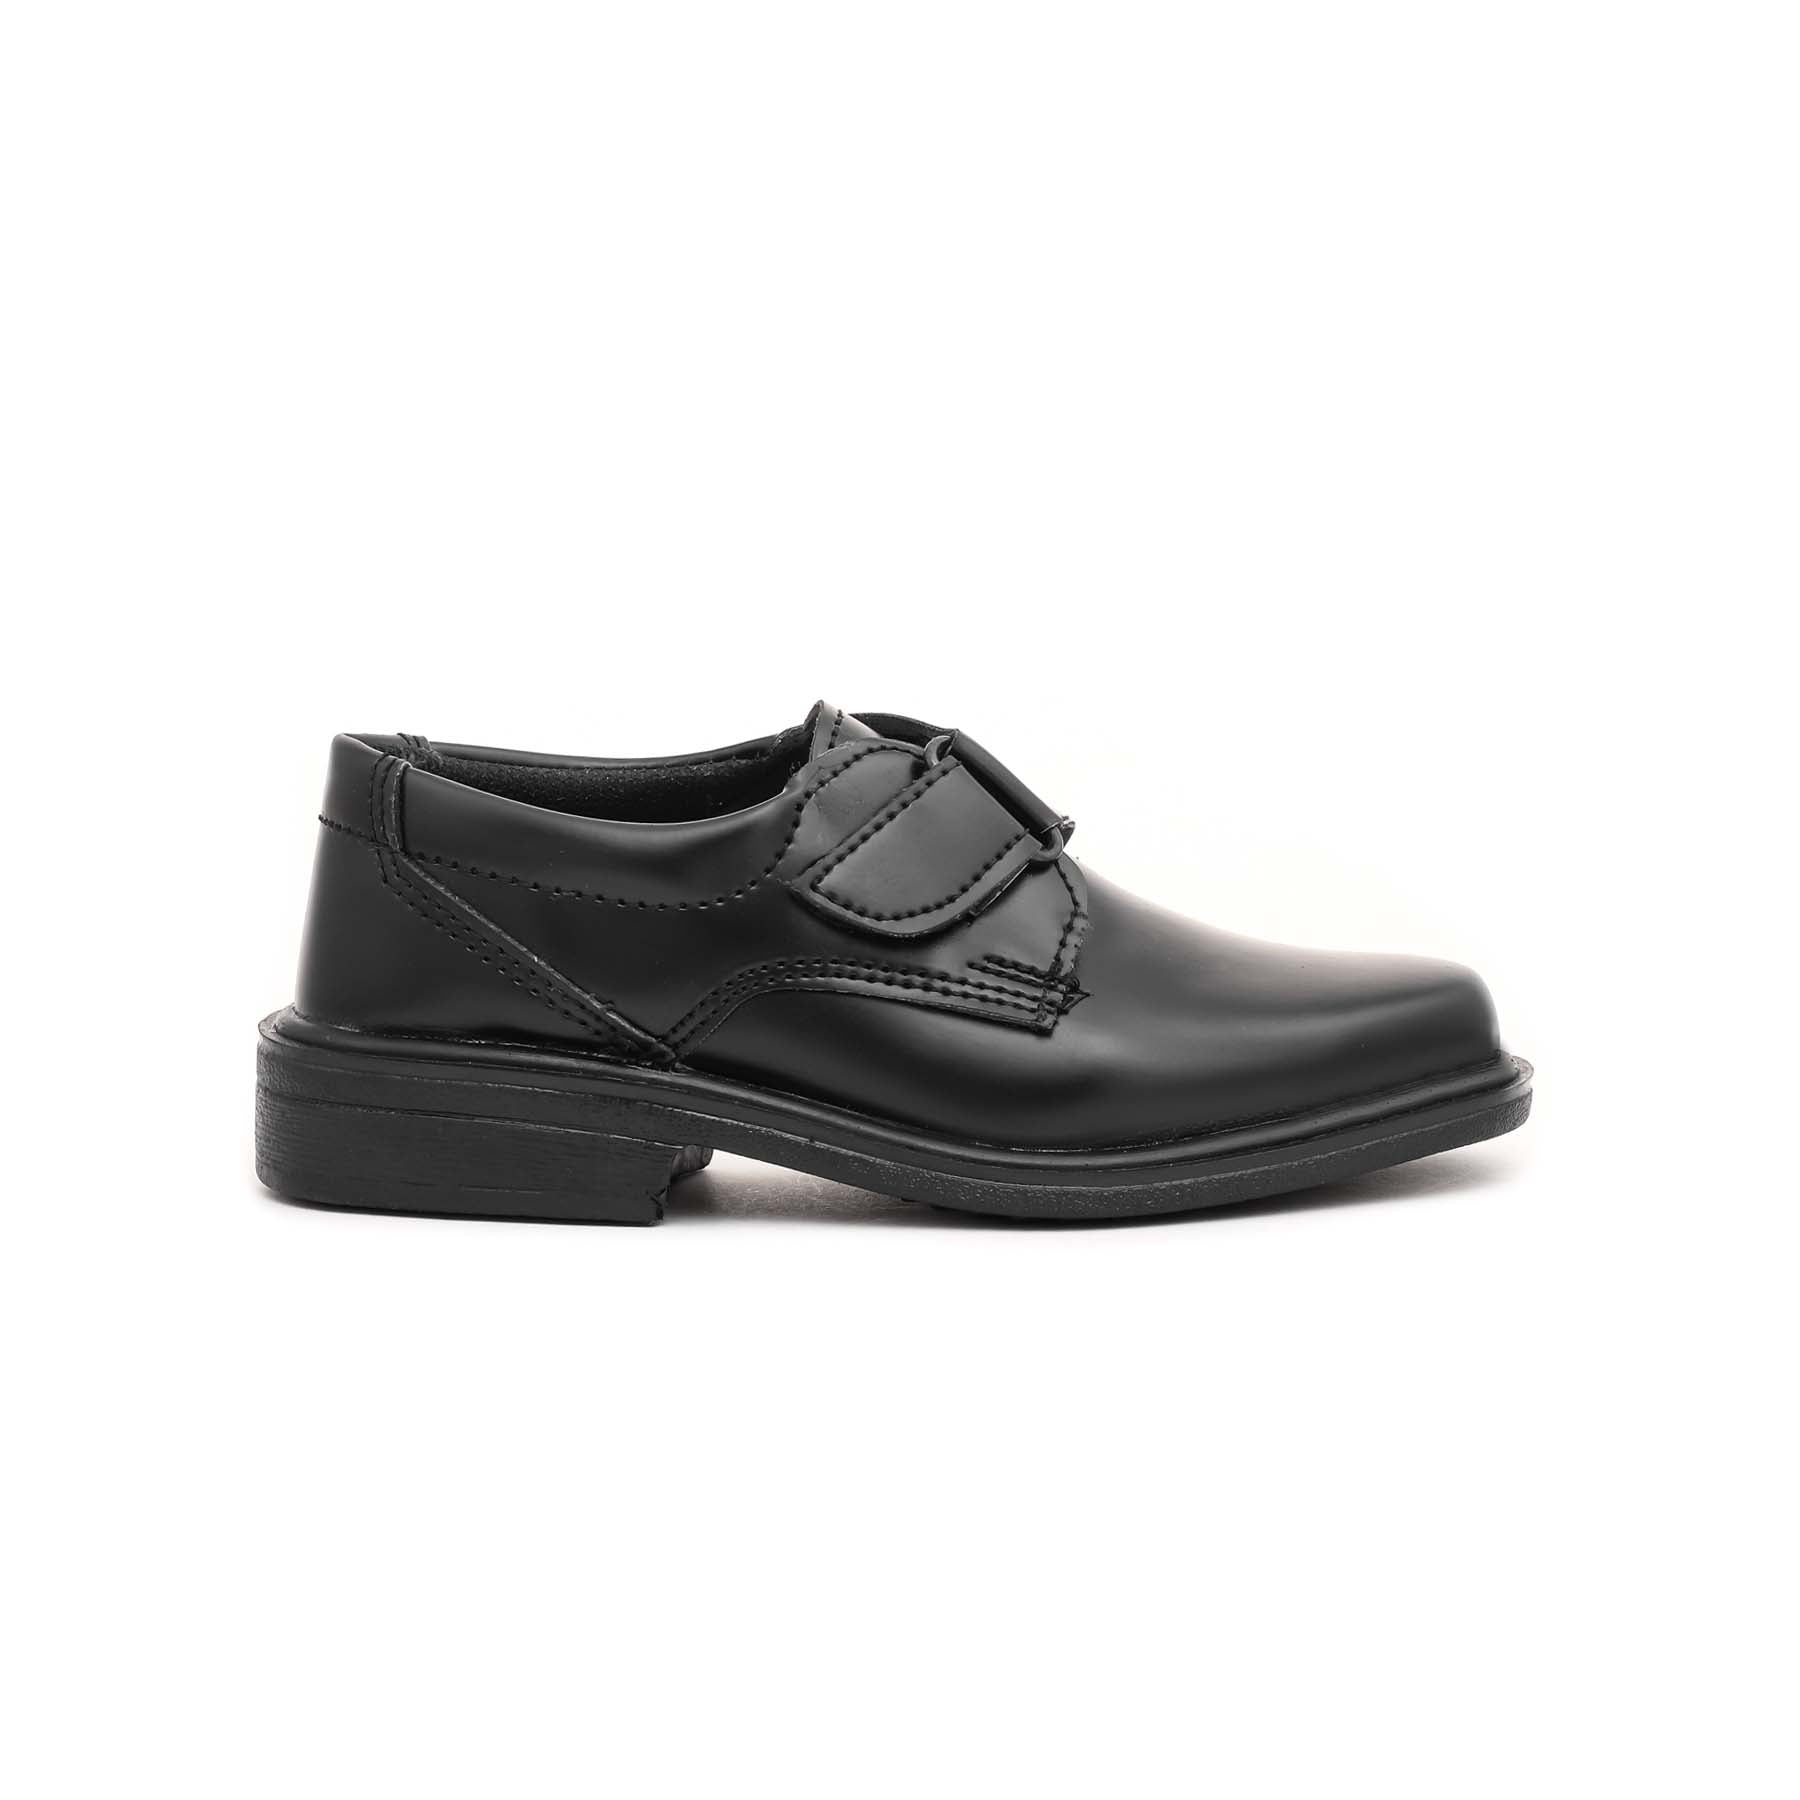 Boys Black School Shoes SK1058